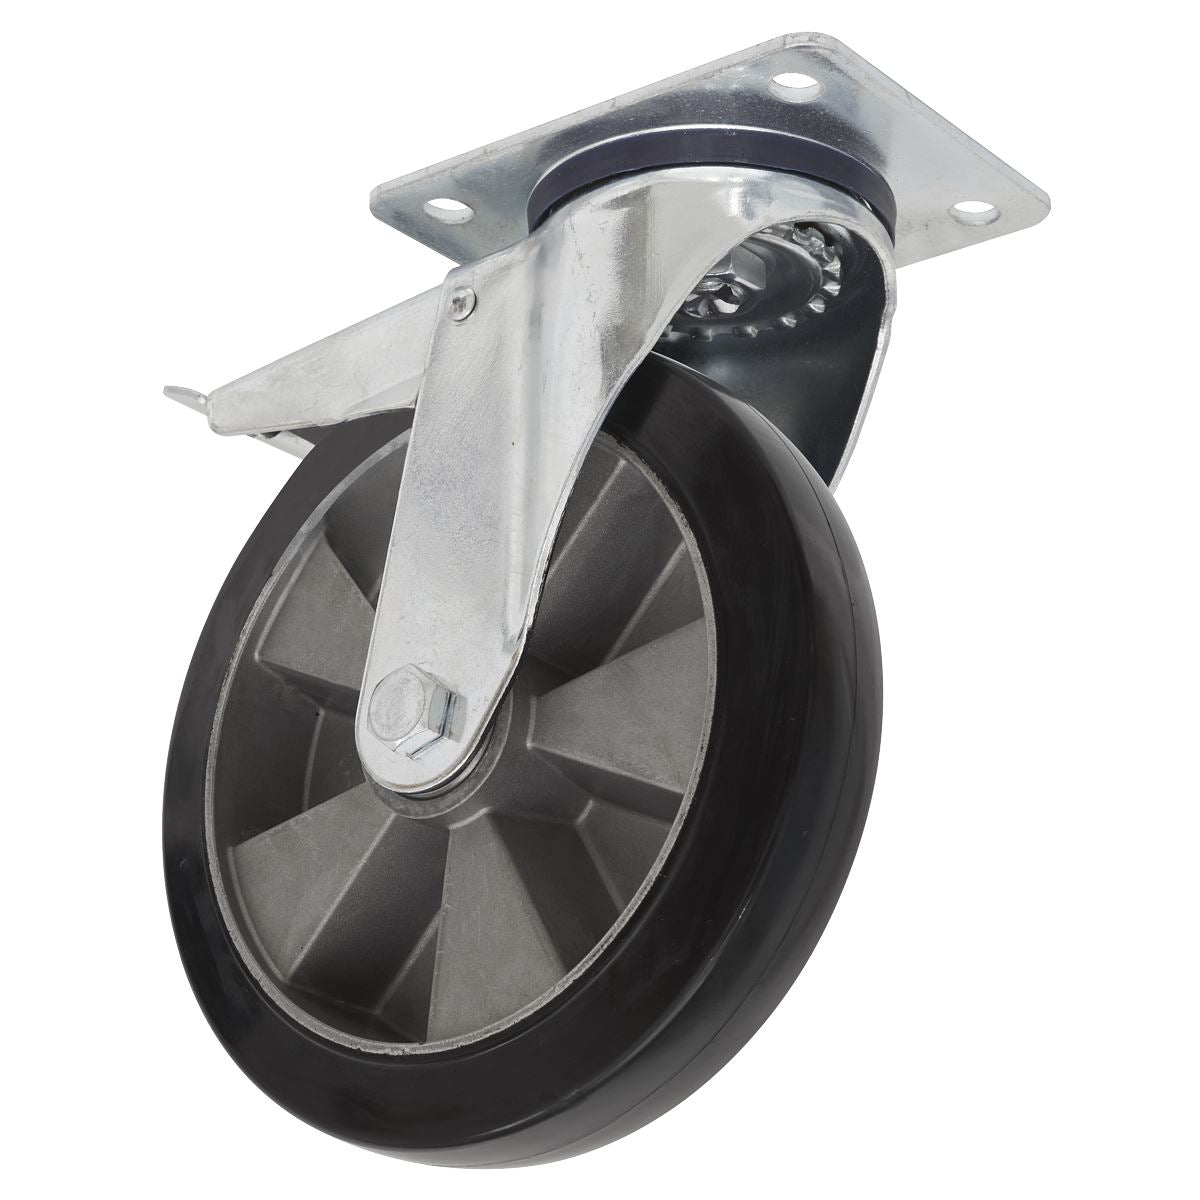 Sealey Heavy-Duty Rubber Castor Wheel Swivel with Total Lock Ø152mm - Trade